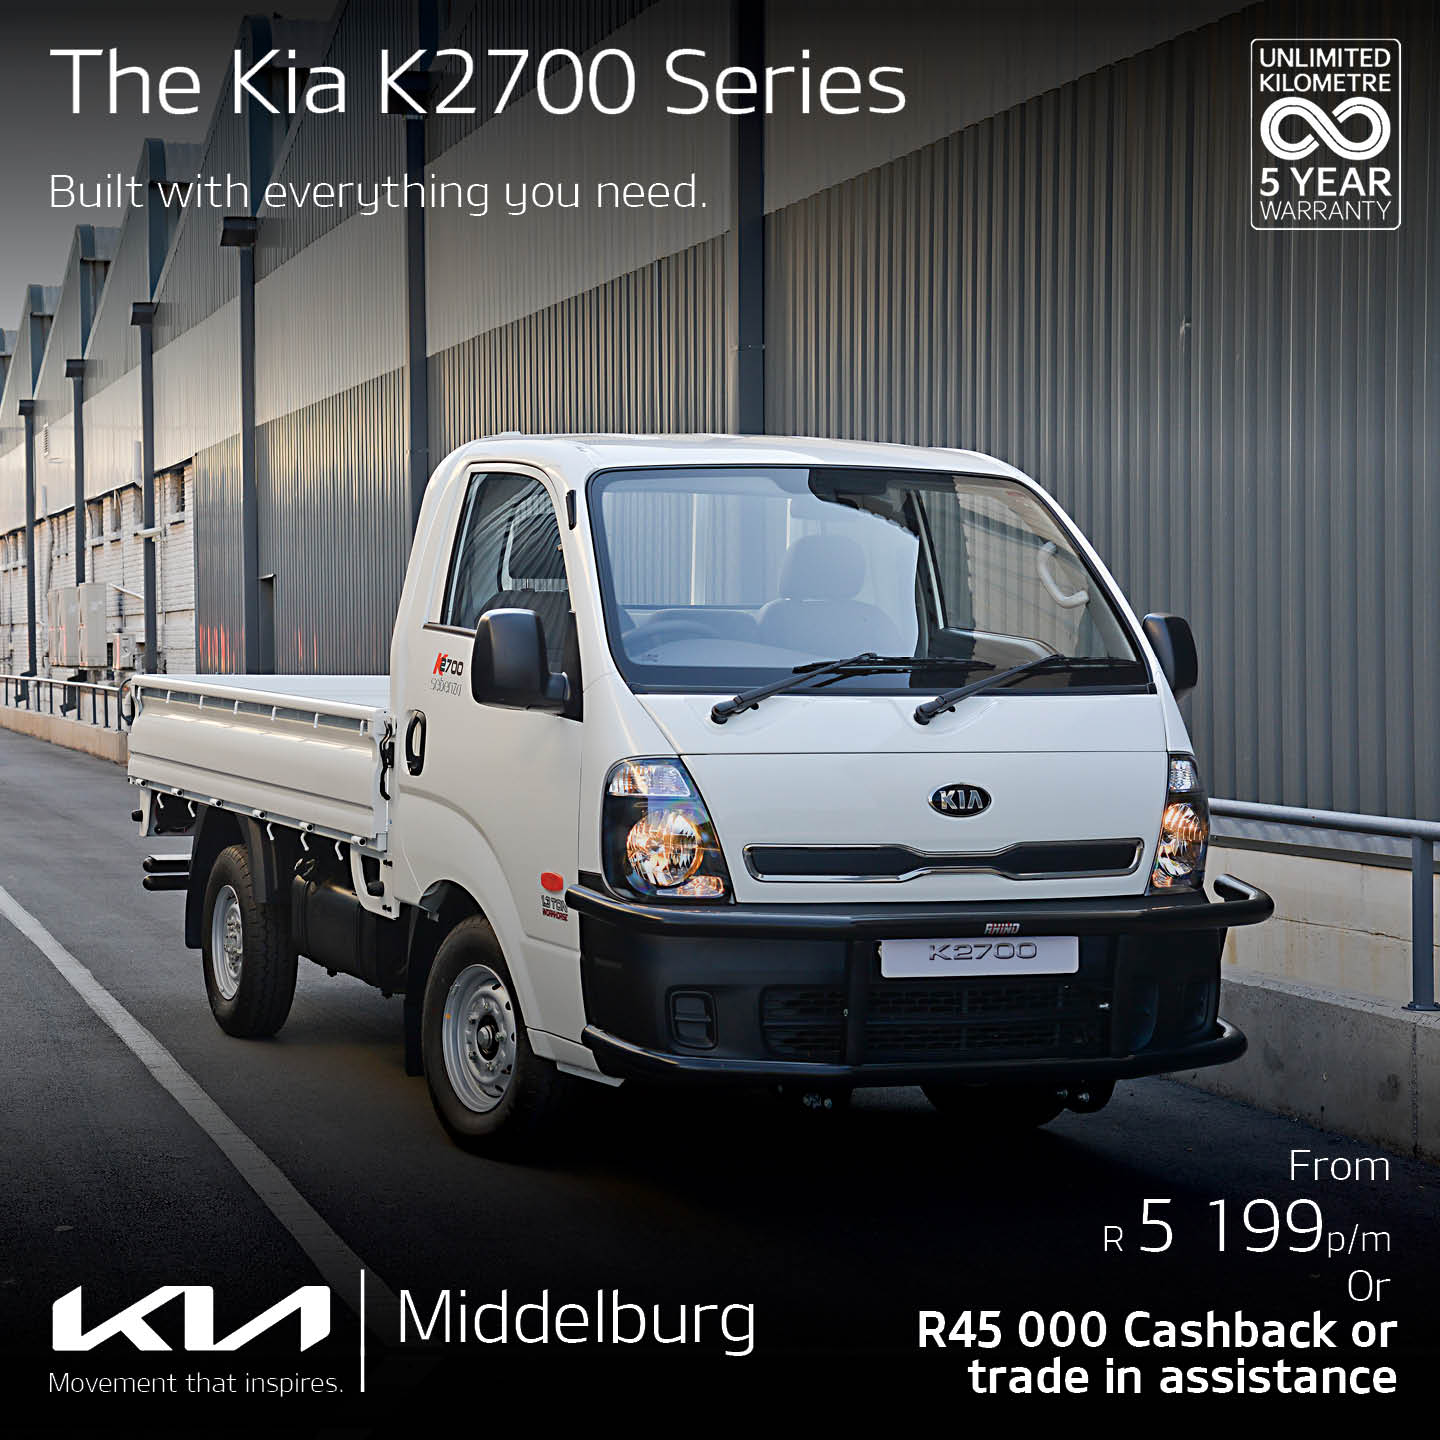 KIA K2700 series image from Eastvaal Motors